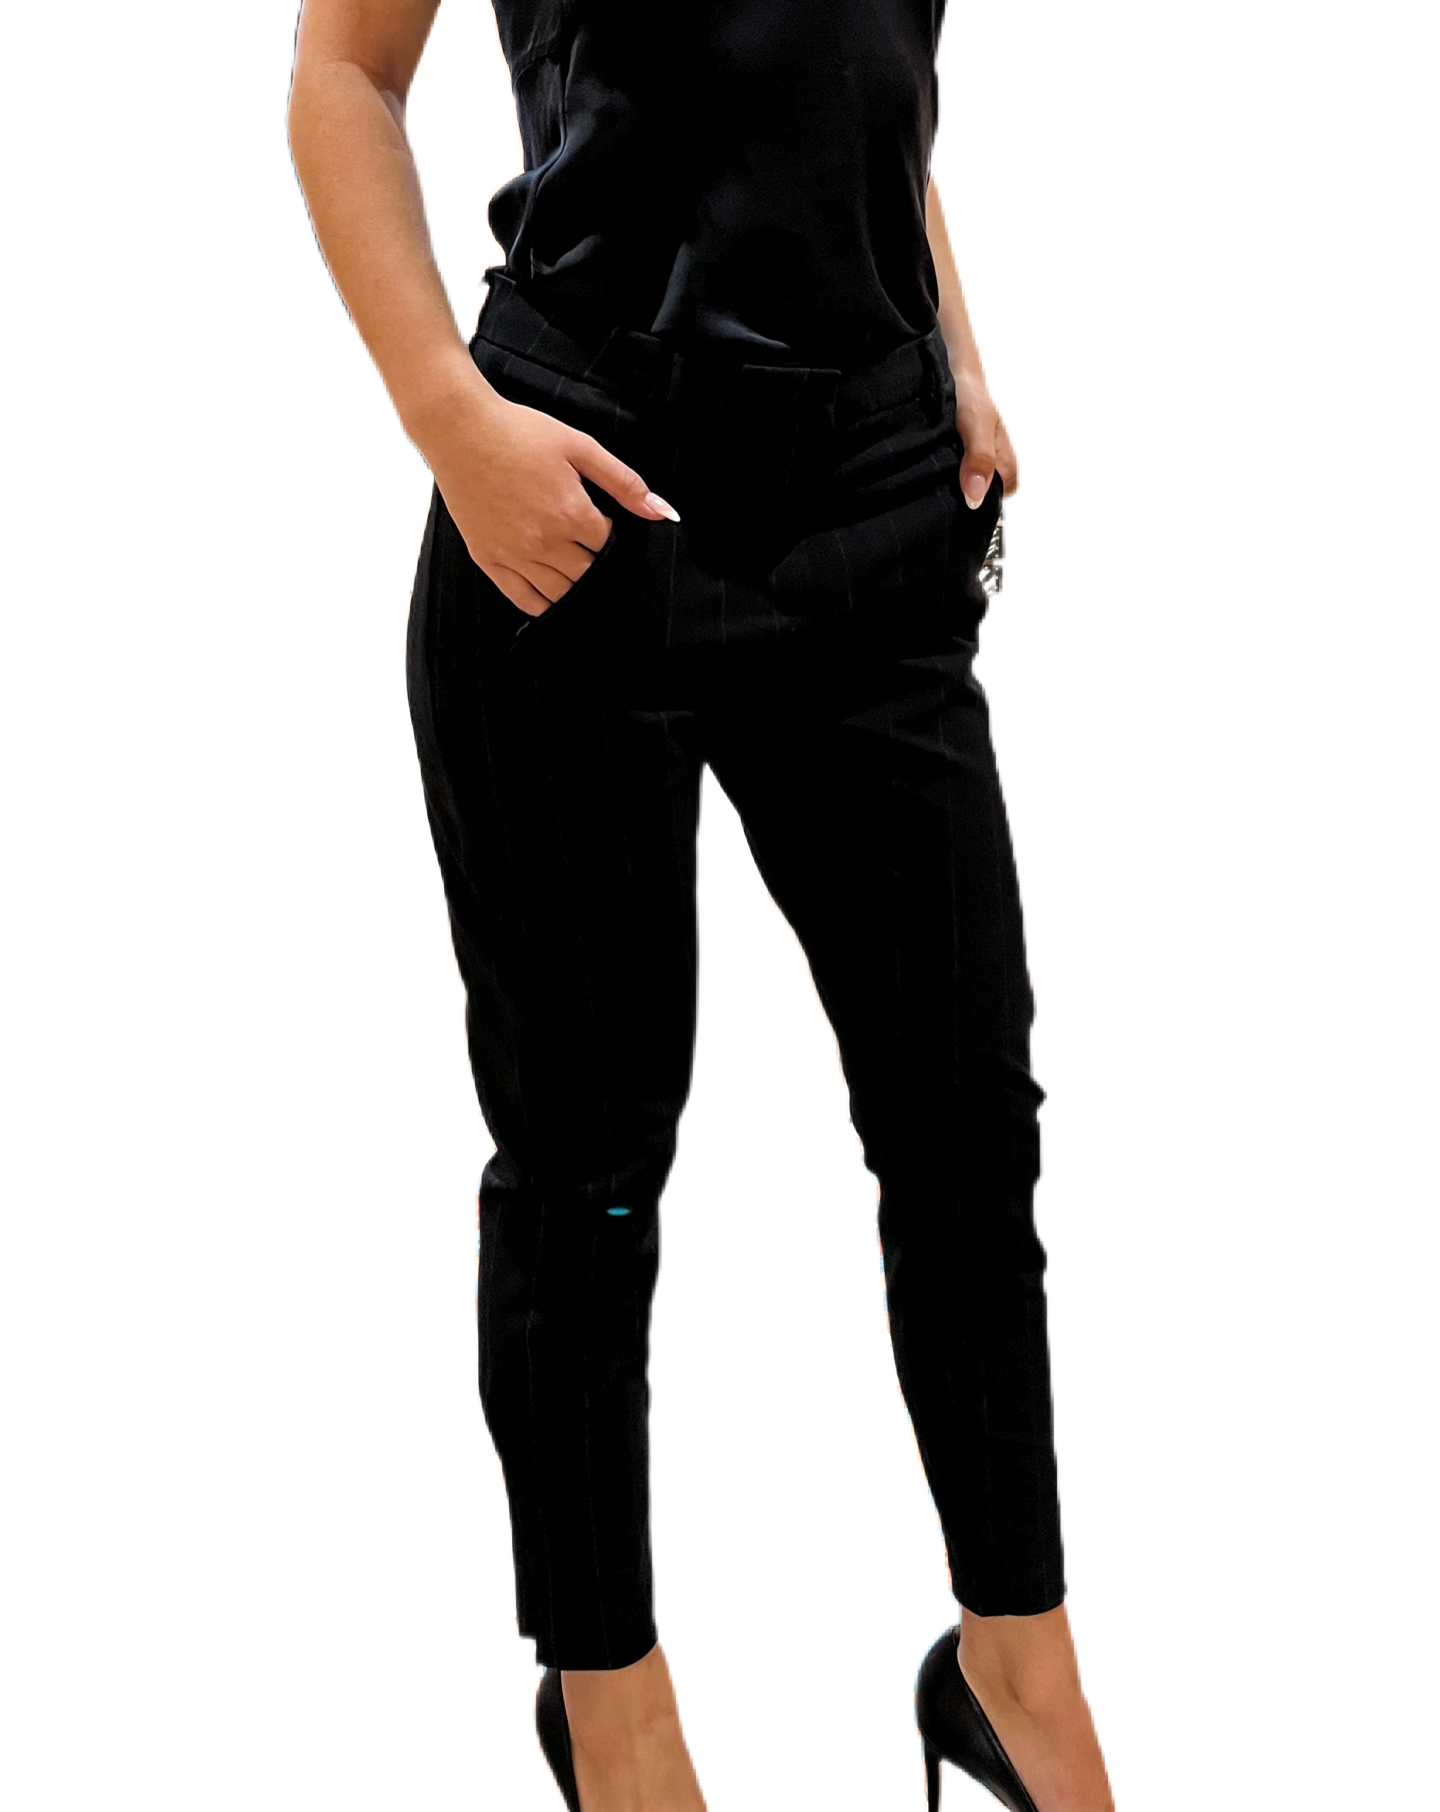 Five Units Black Pinstripe Pants. Size: 27